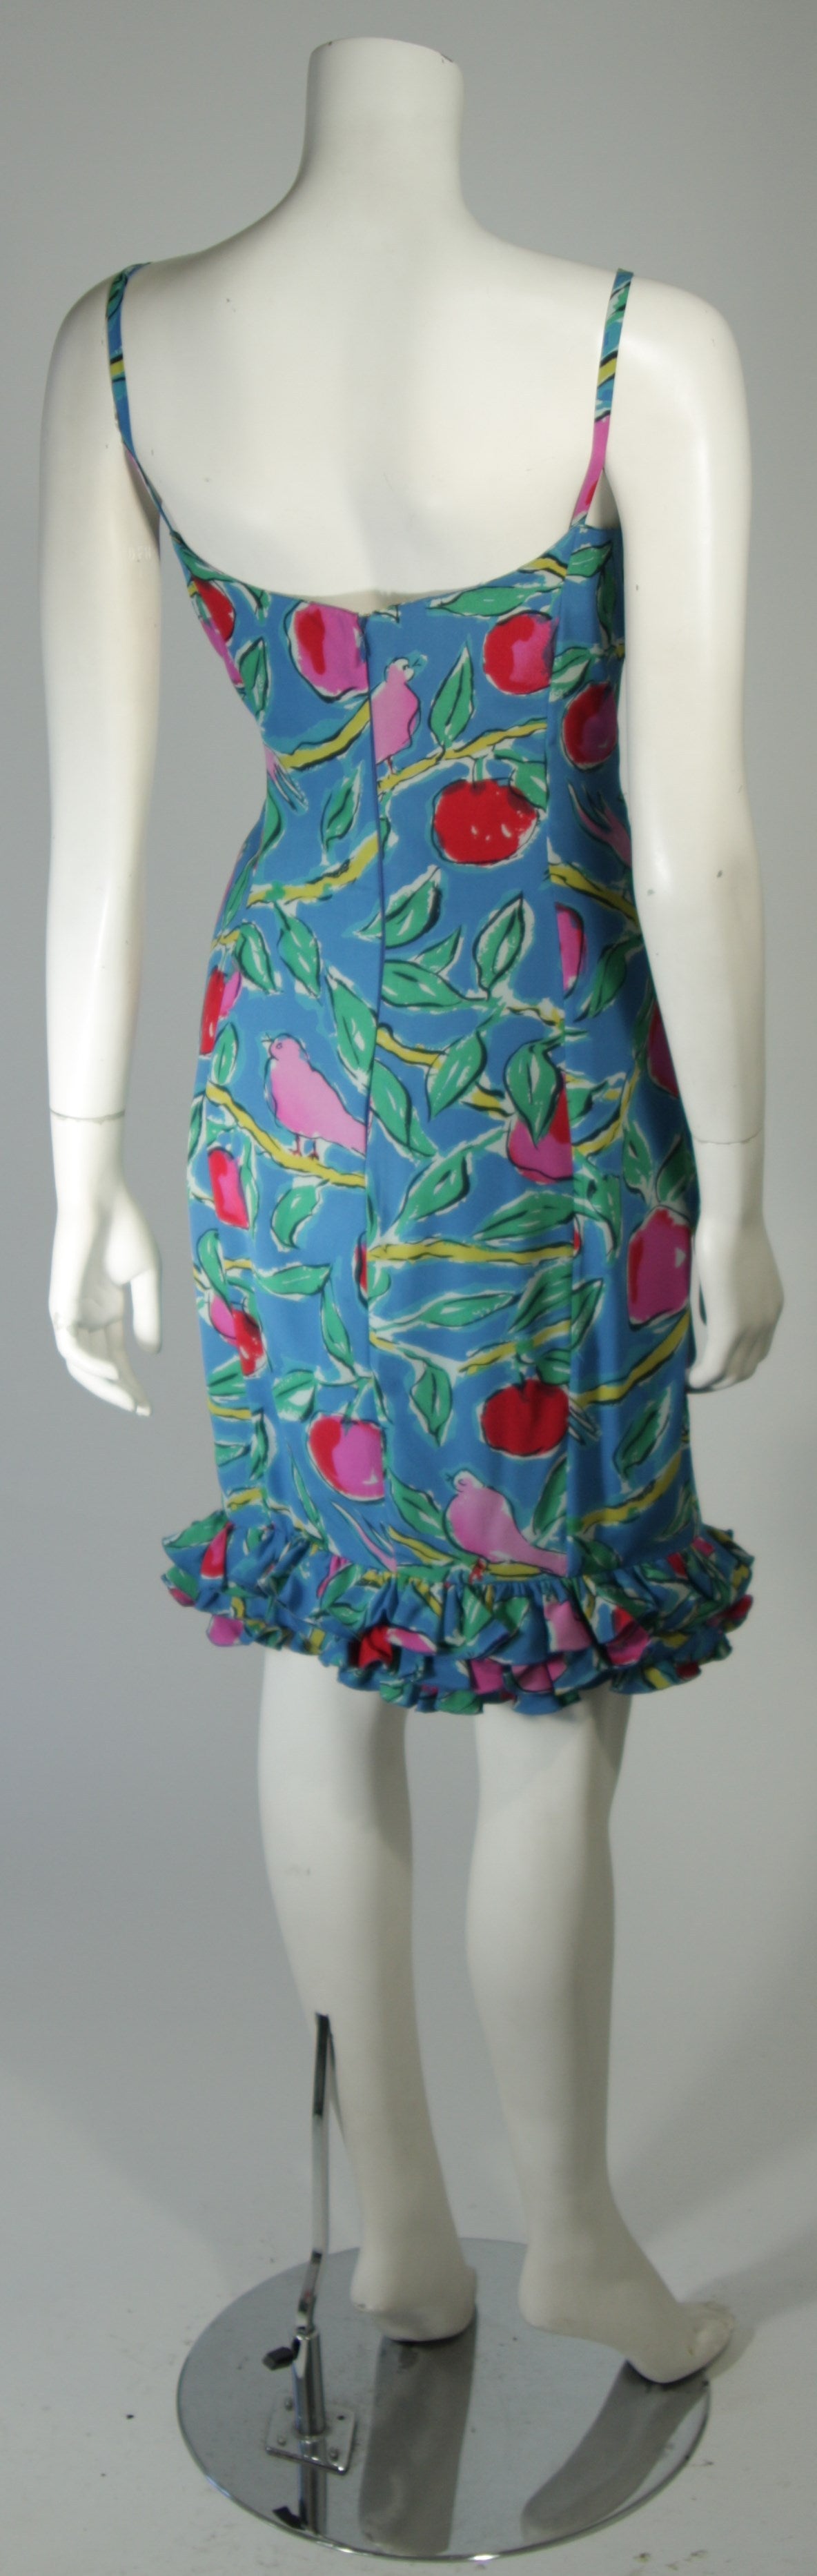 Ungaro Tropical Print Silk Cocktaili Dress with Bird Motif Size 8 1